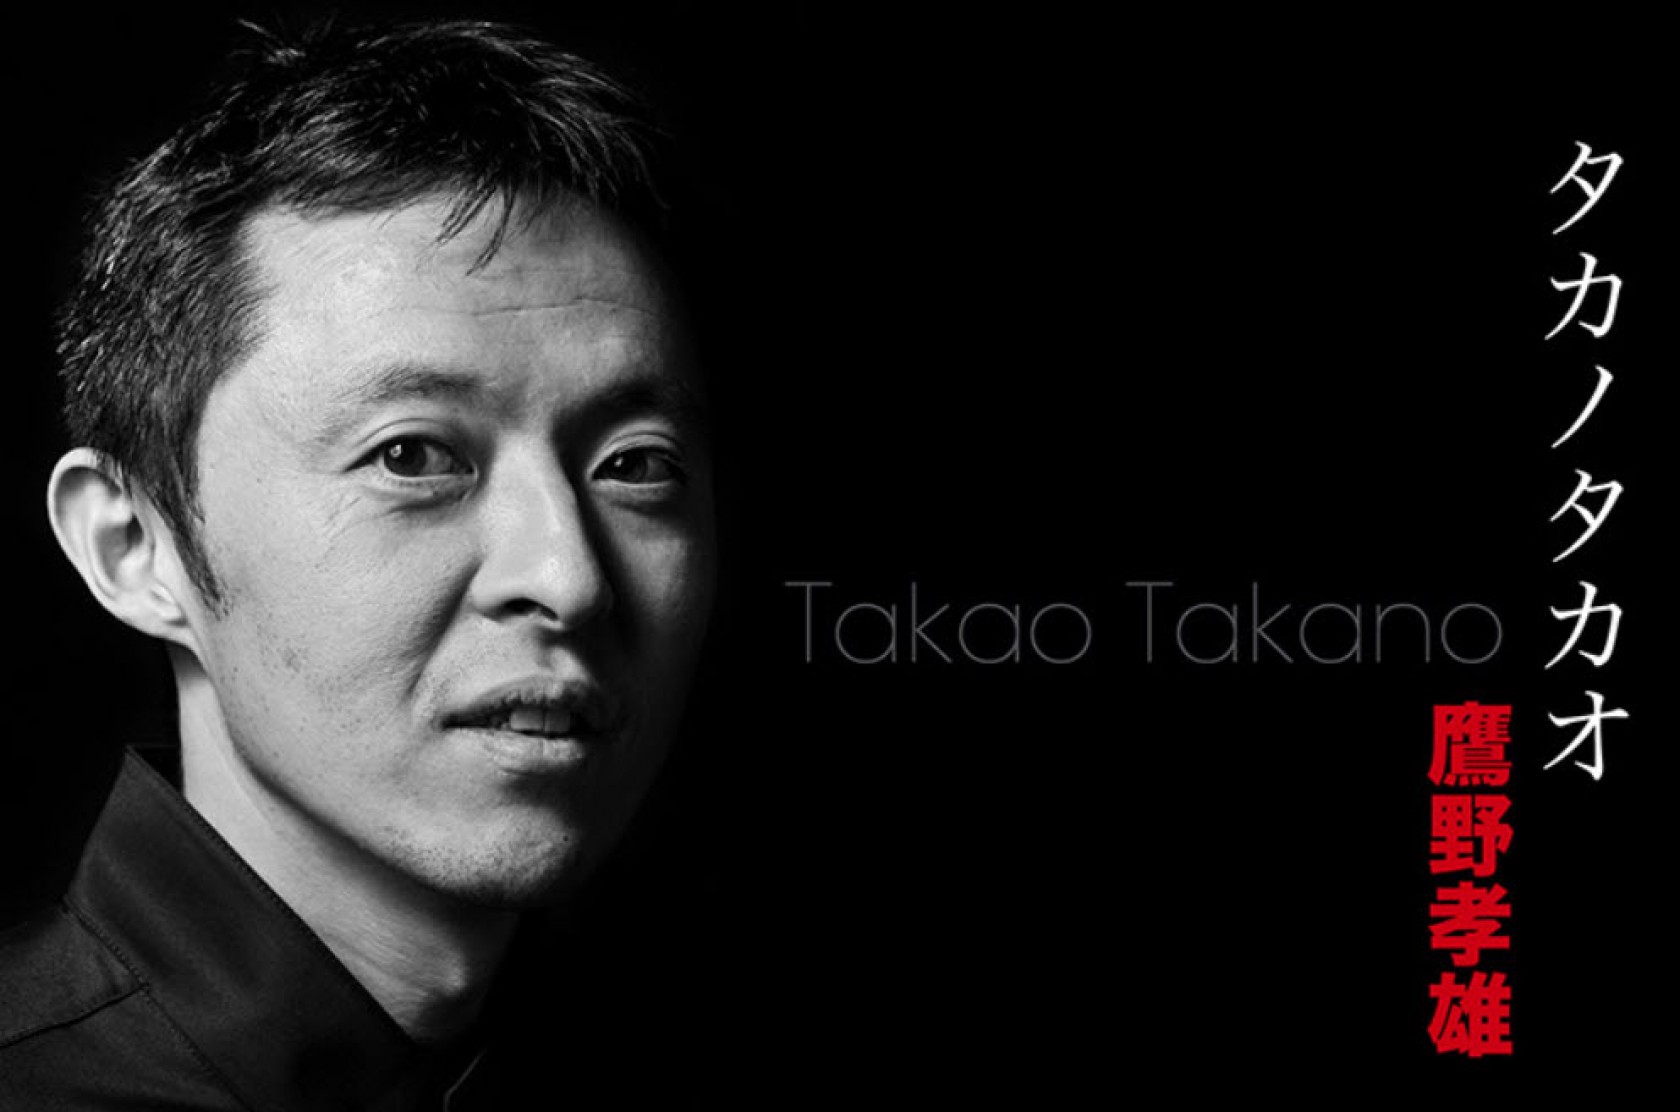 Takao Takano